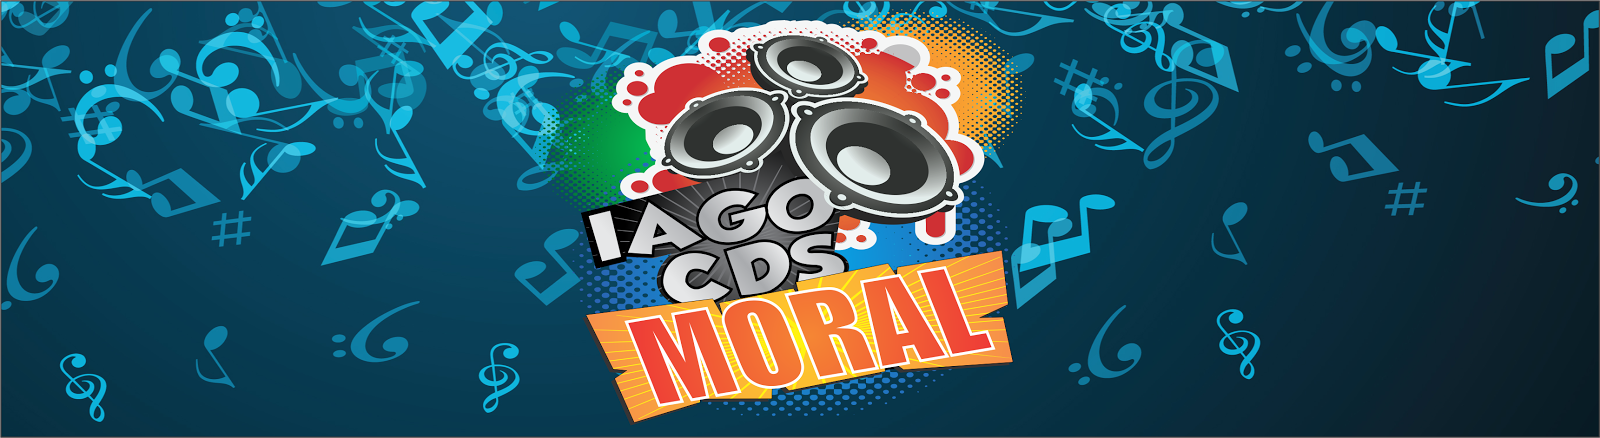 Iago CD's Moral